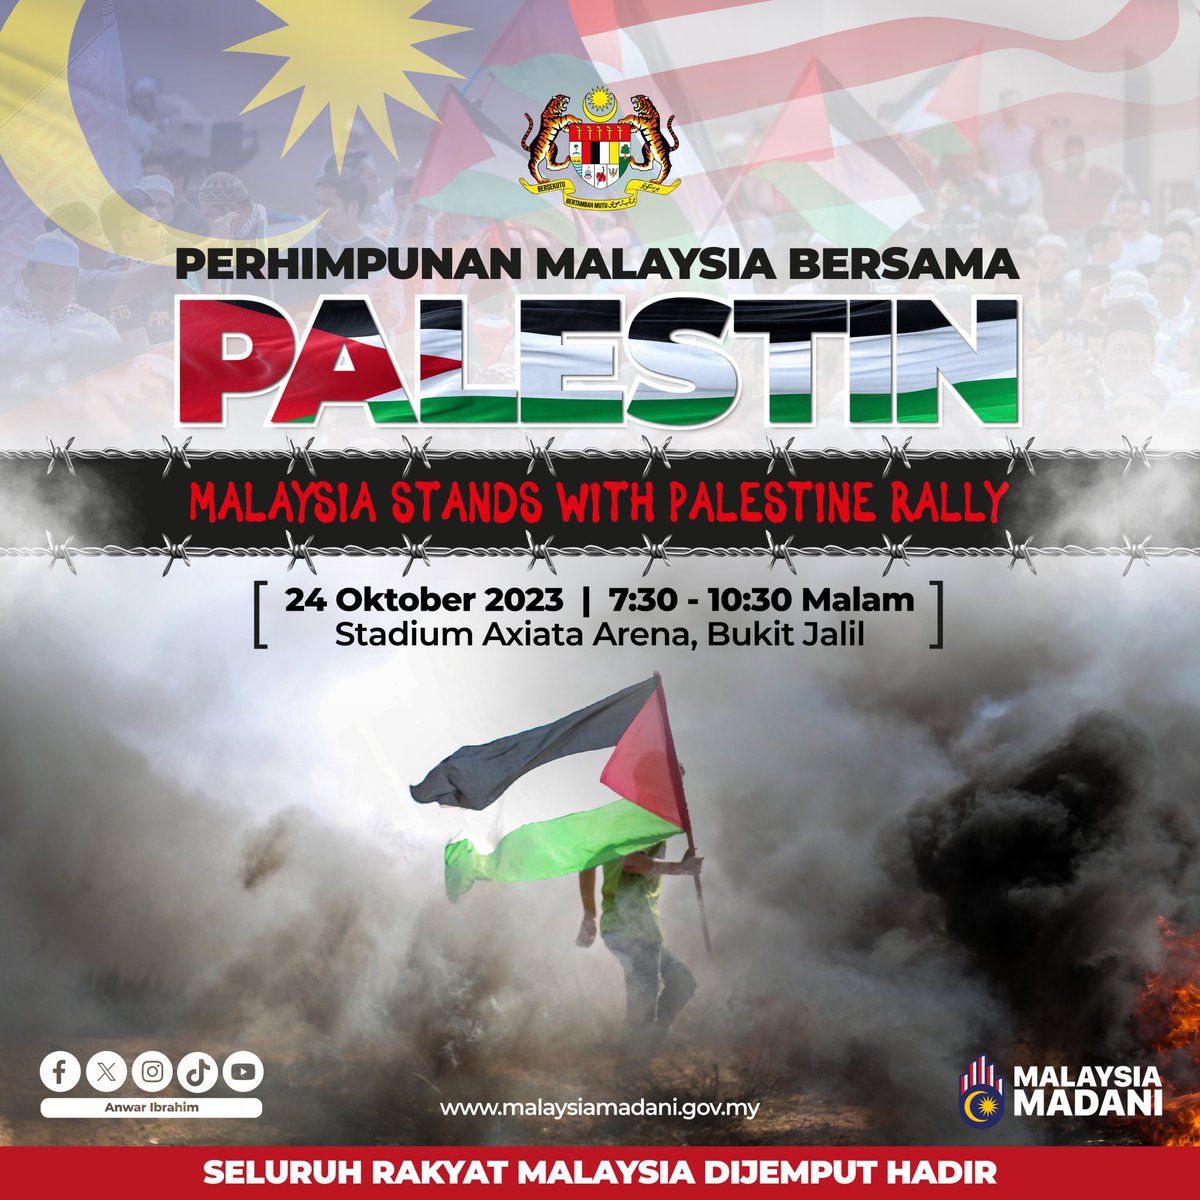 Ayuh seluruh rakyat Malaysia turun ke Axiata Arena, Bukit Jalil esok malam sebagai tanda solidariti kita bersama rakyat Palestin!